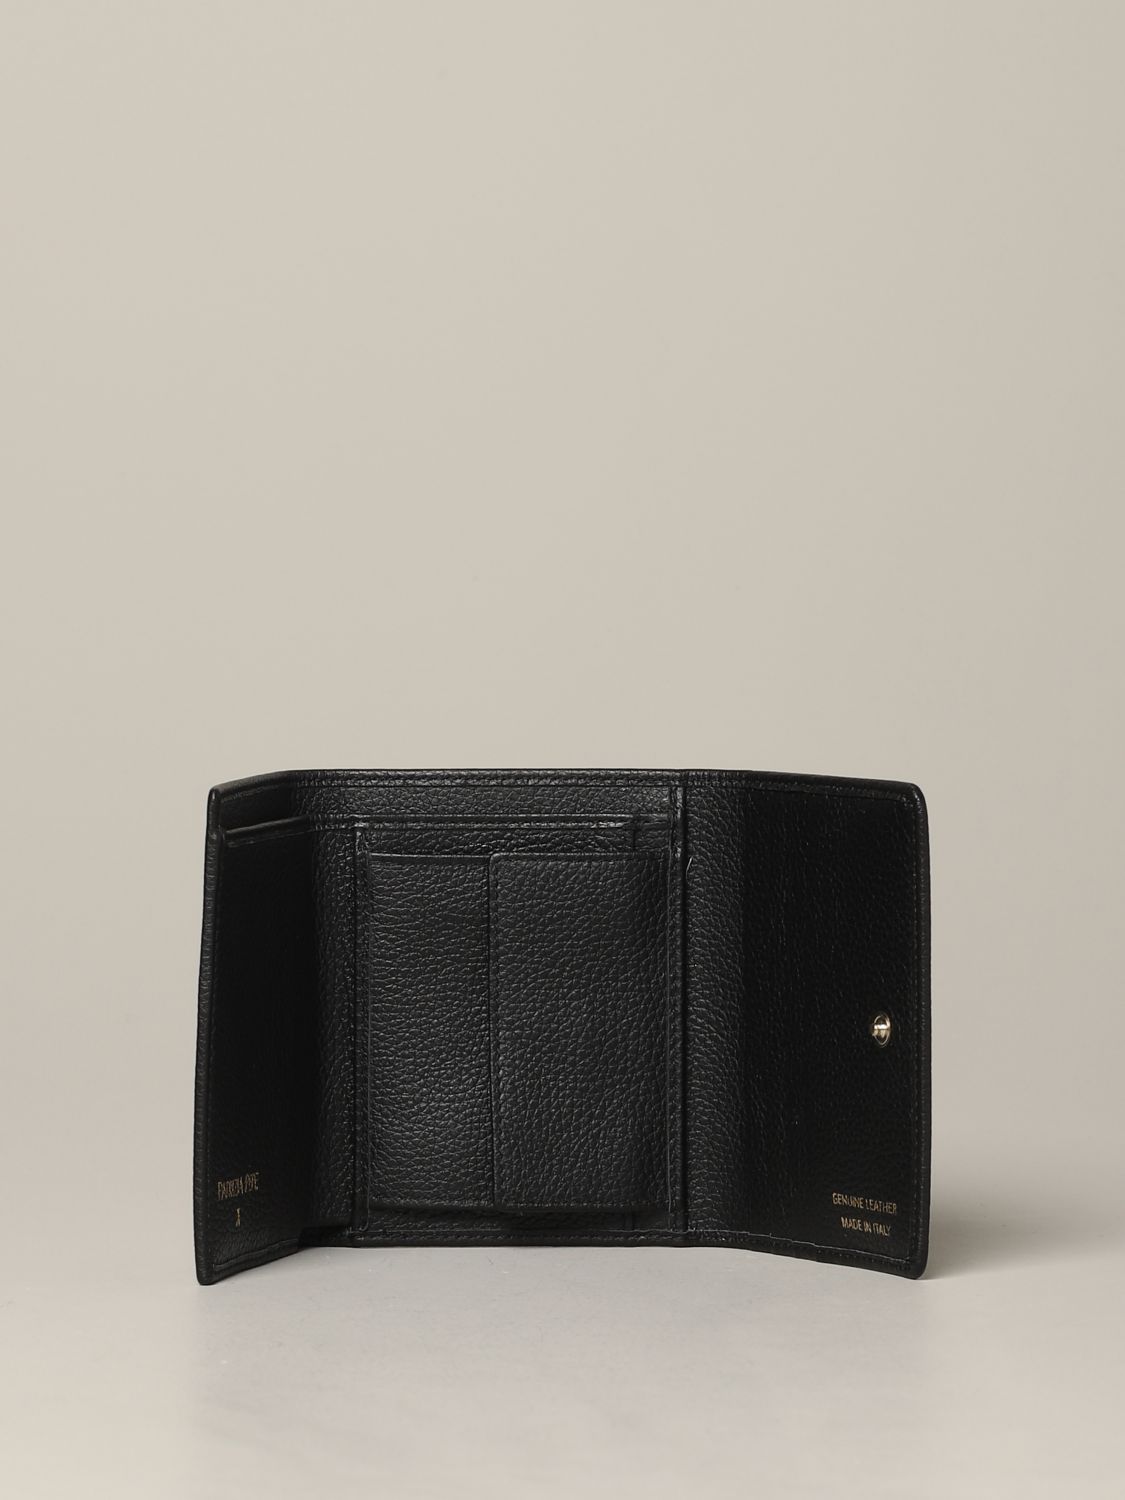 Patrizia Pepe Outlet: wallet in leather with metallic logo - Fuchsia